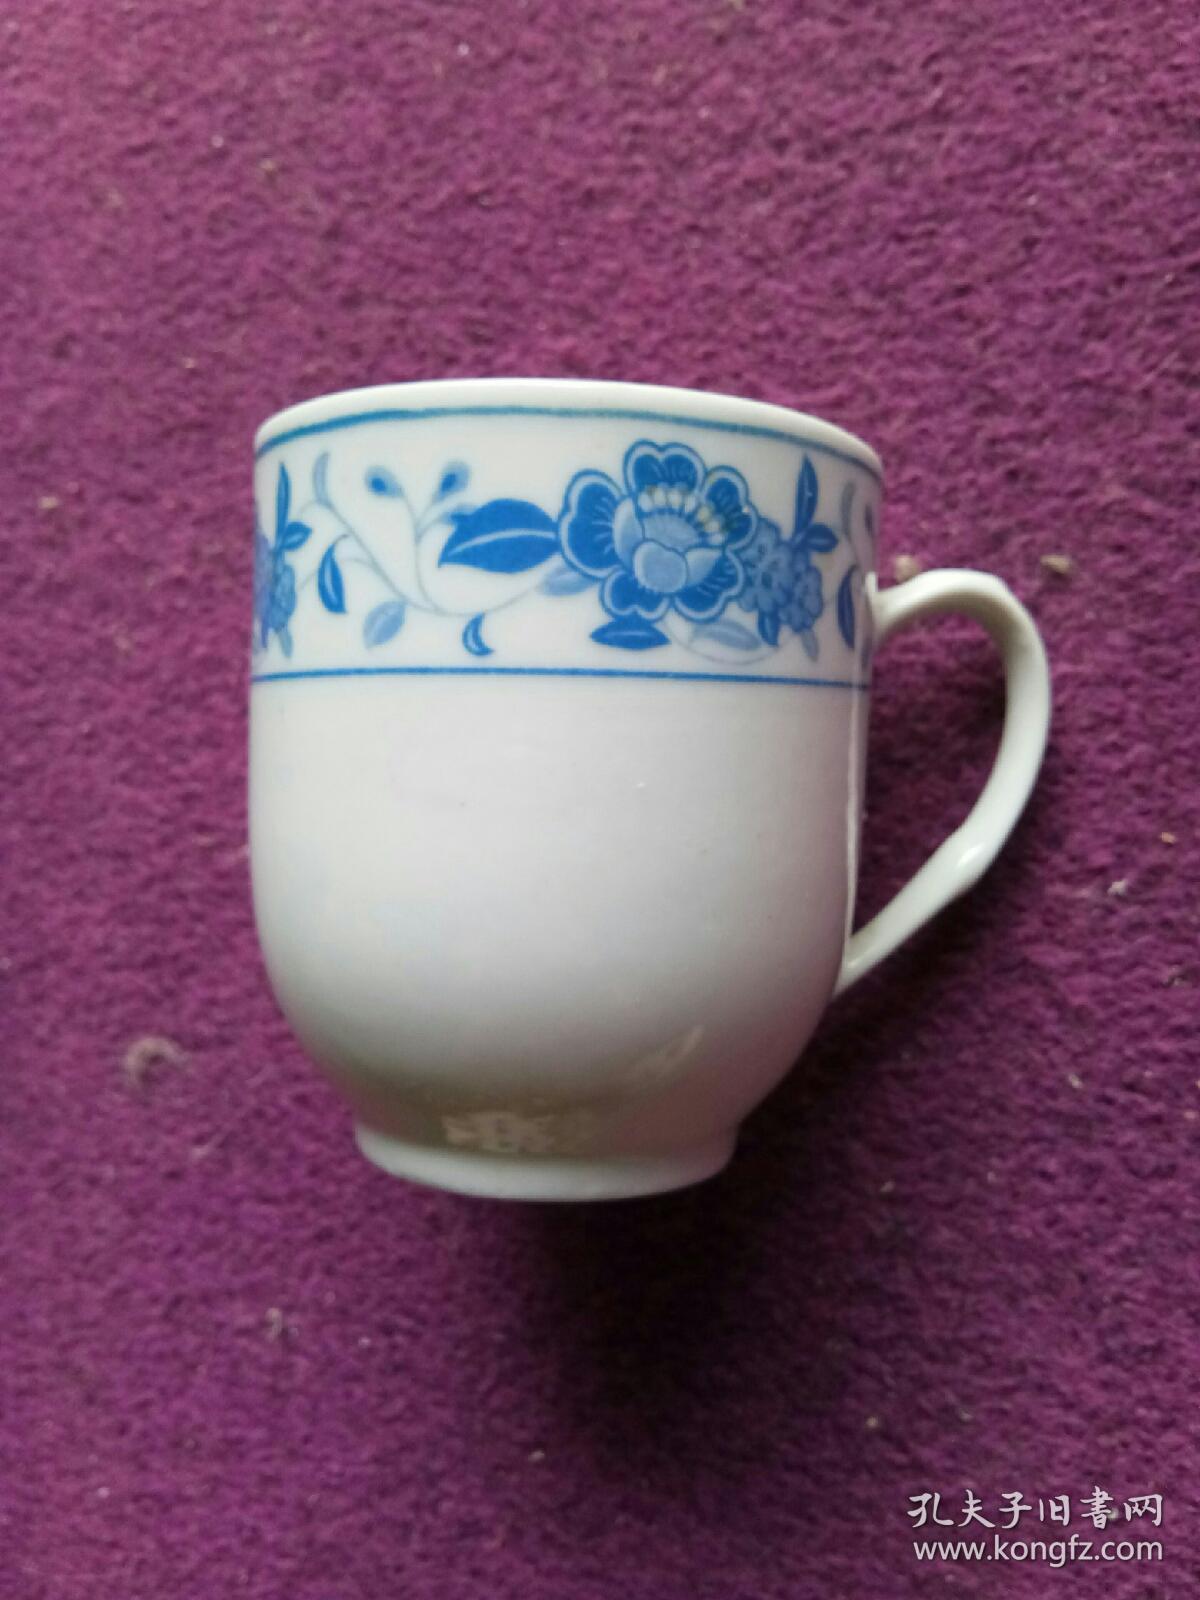 上世纪八十年代湖南醴陵瓷醴陵国光大茶杯，完整少见。品相好，老陶瓷老货。杯口直径8.5厘米，高度9.3厘米。